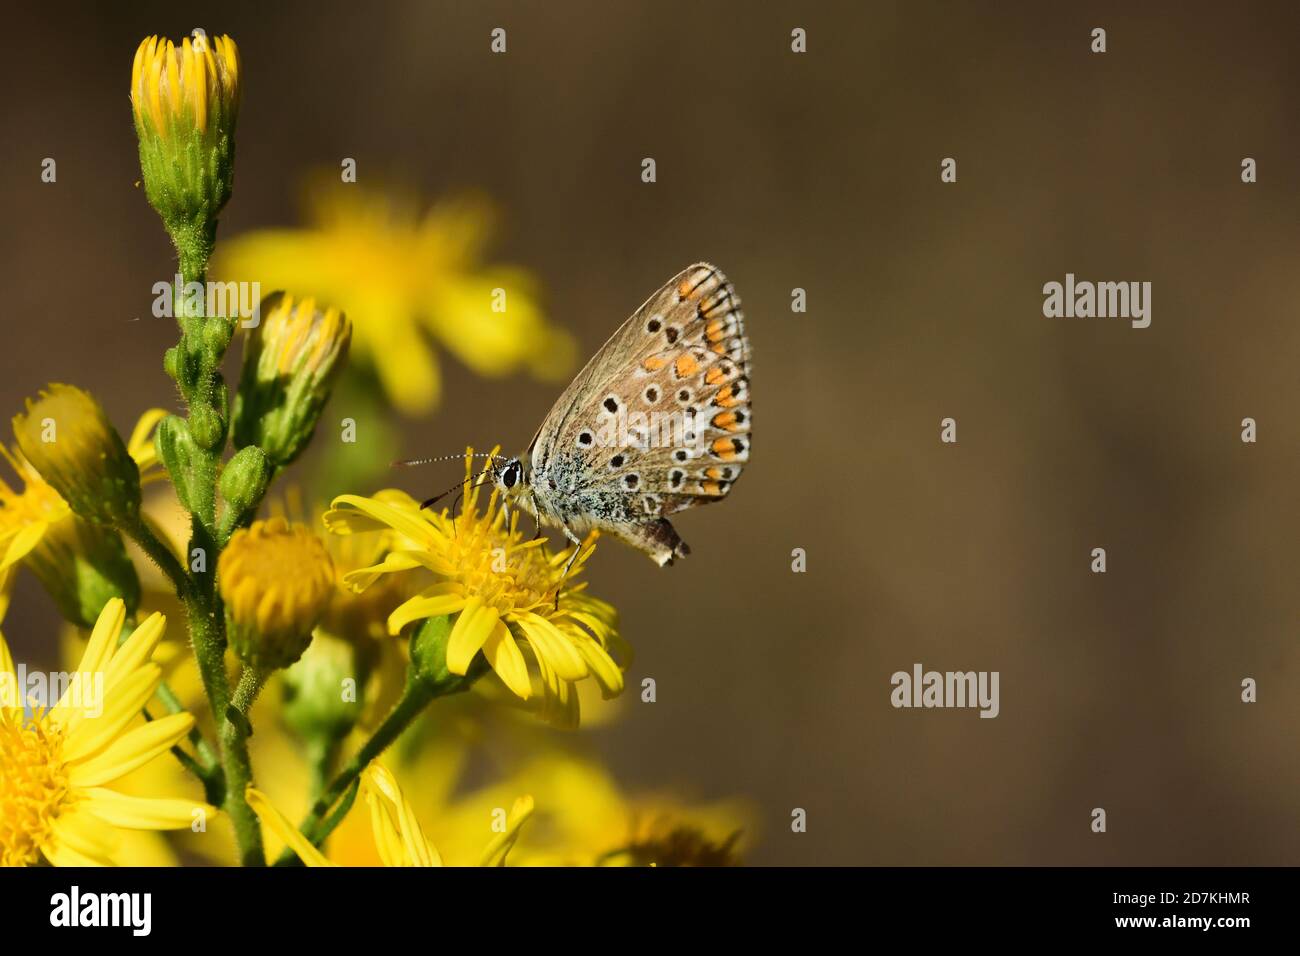 Macro fotografia di un Polimatus, una farfalla della famiglia Lycaenidae, presa nel suo habitat naturale. Foto Stock